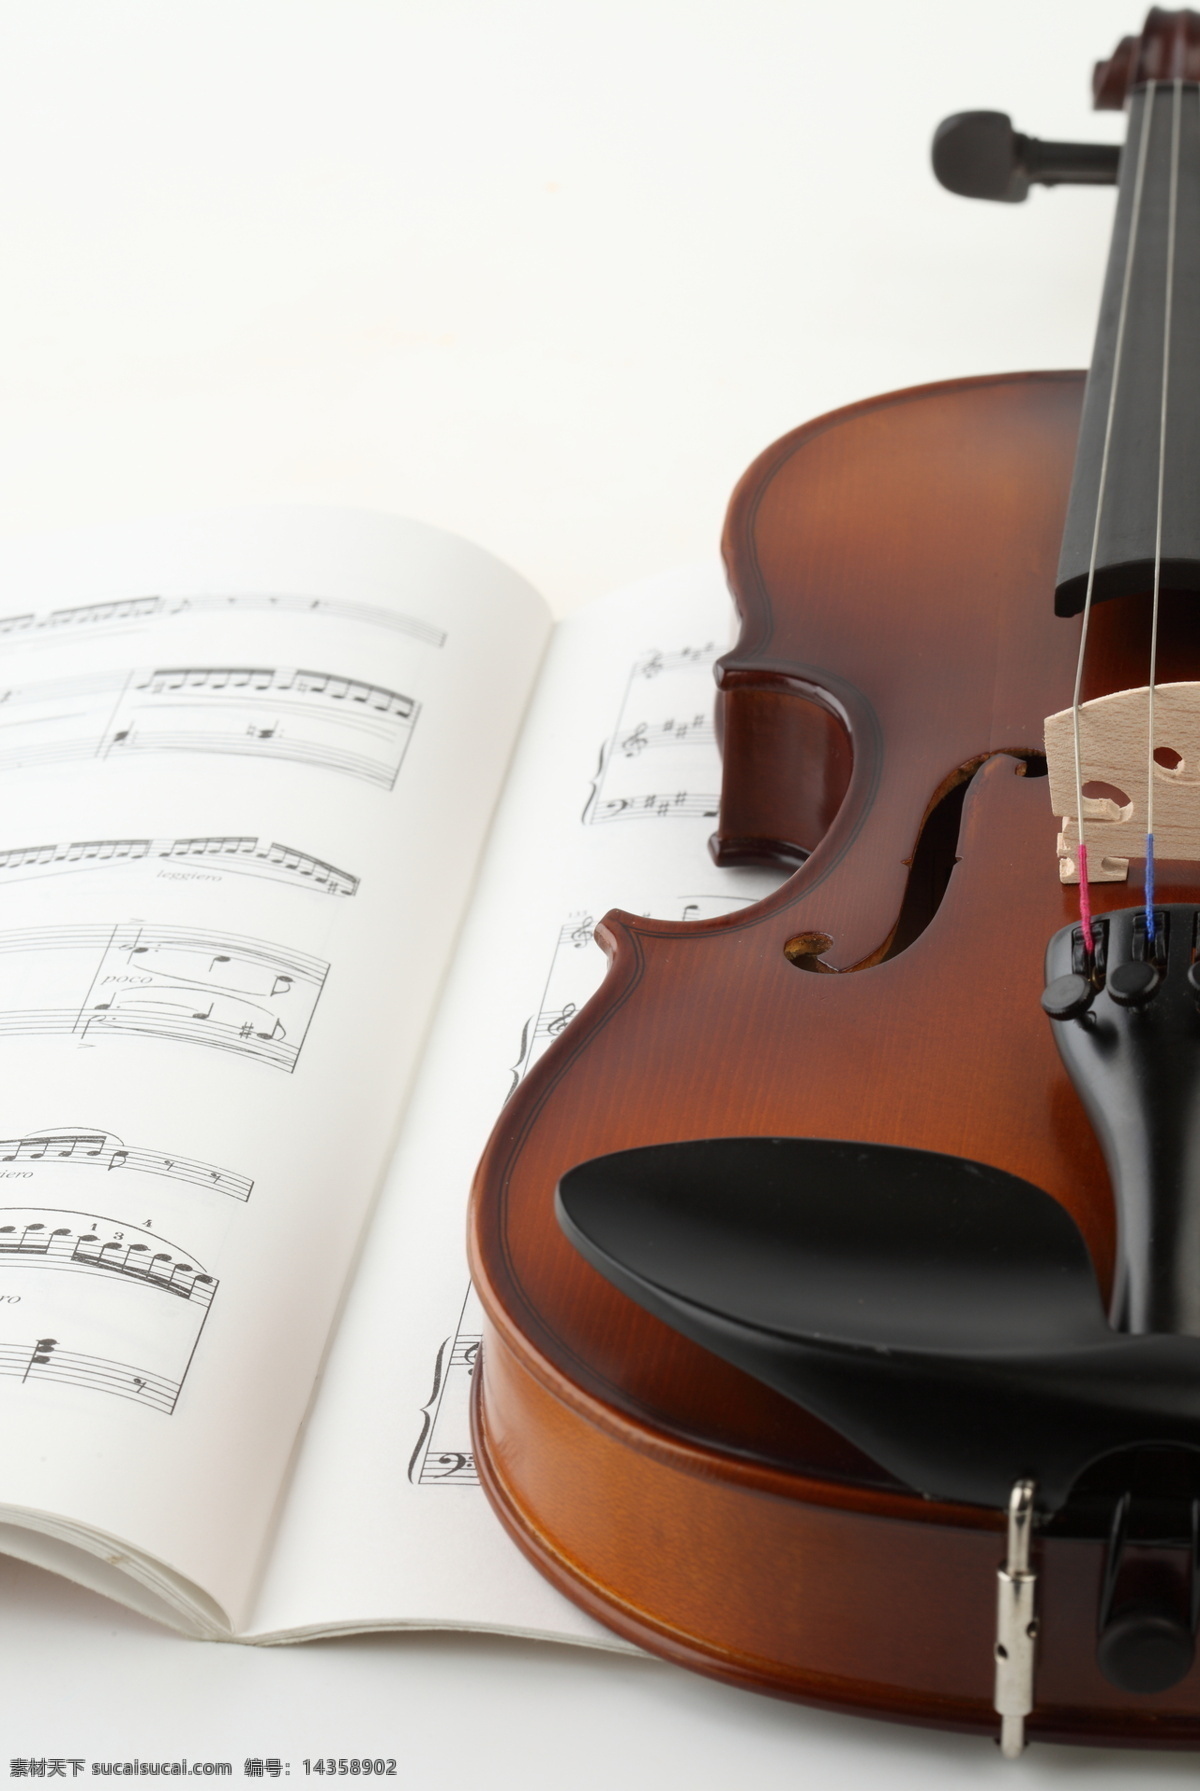 小提琴 乐谱 特写 音乐艺术 音乐 乐器 弦乐器 五线谱 摄影图片 高清图片 影音娱乐 生活百科